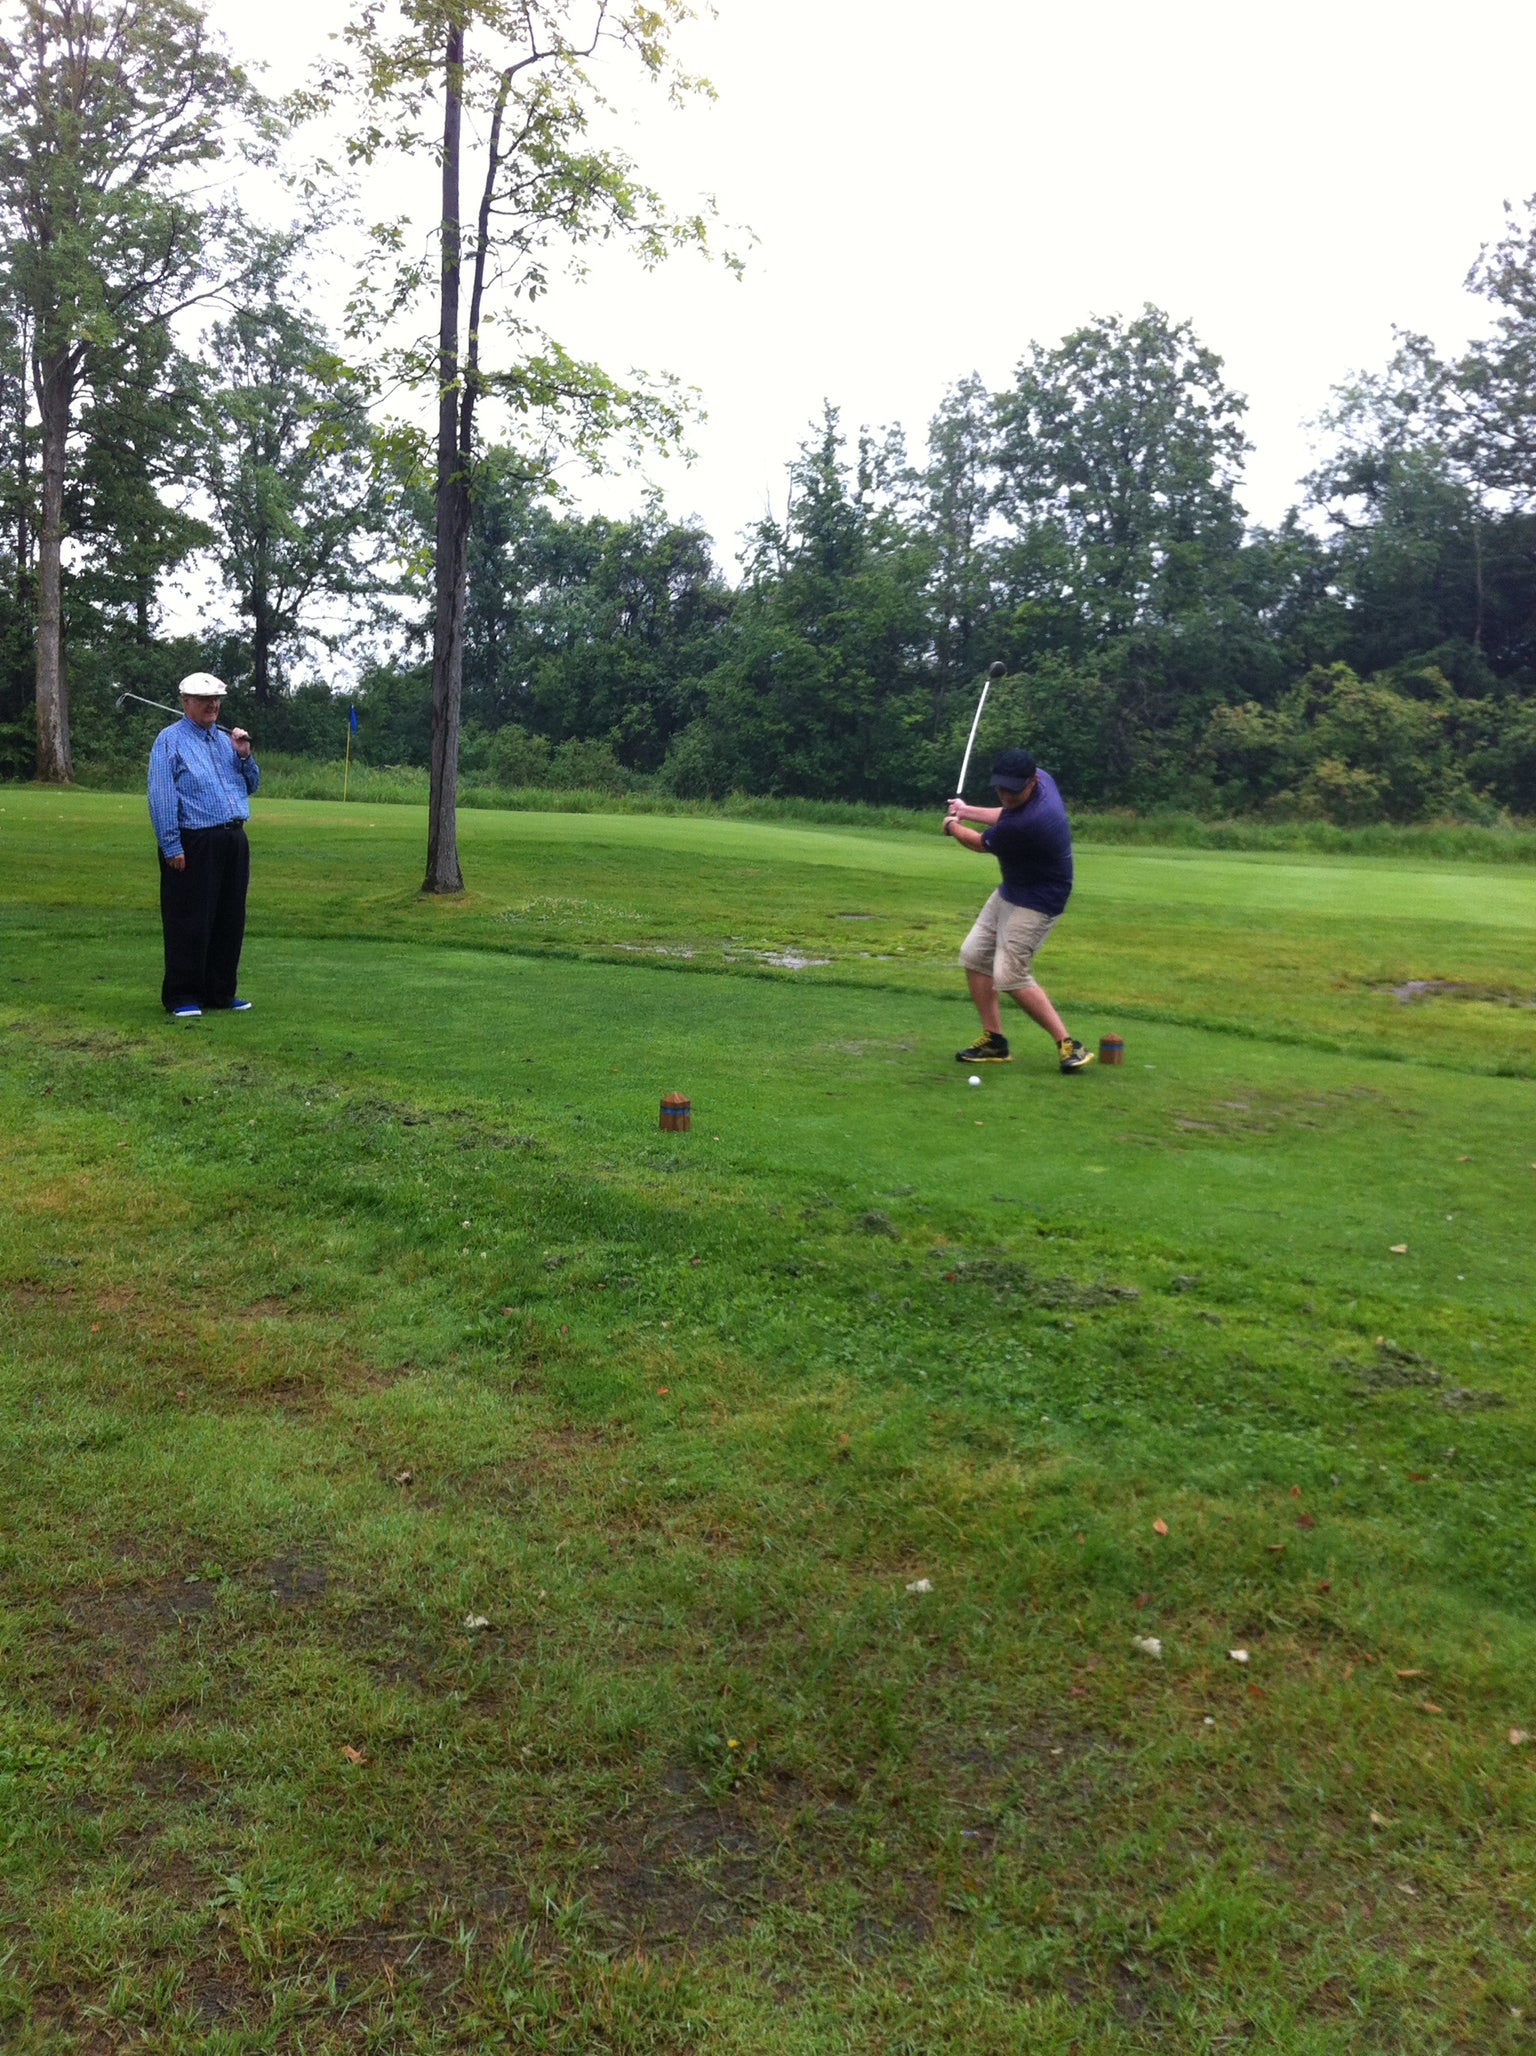 Horatio Rus swinging his golf club.